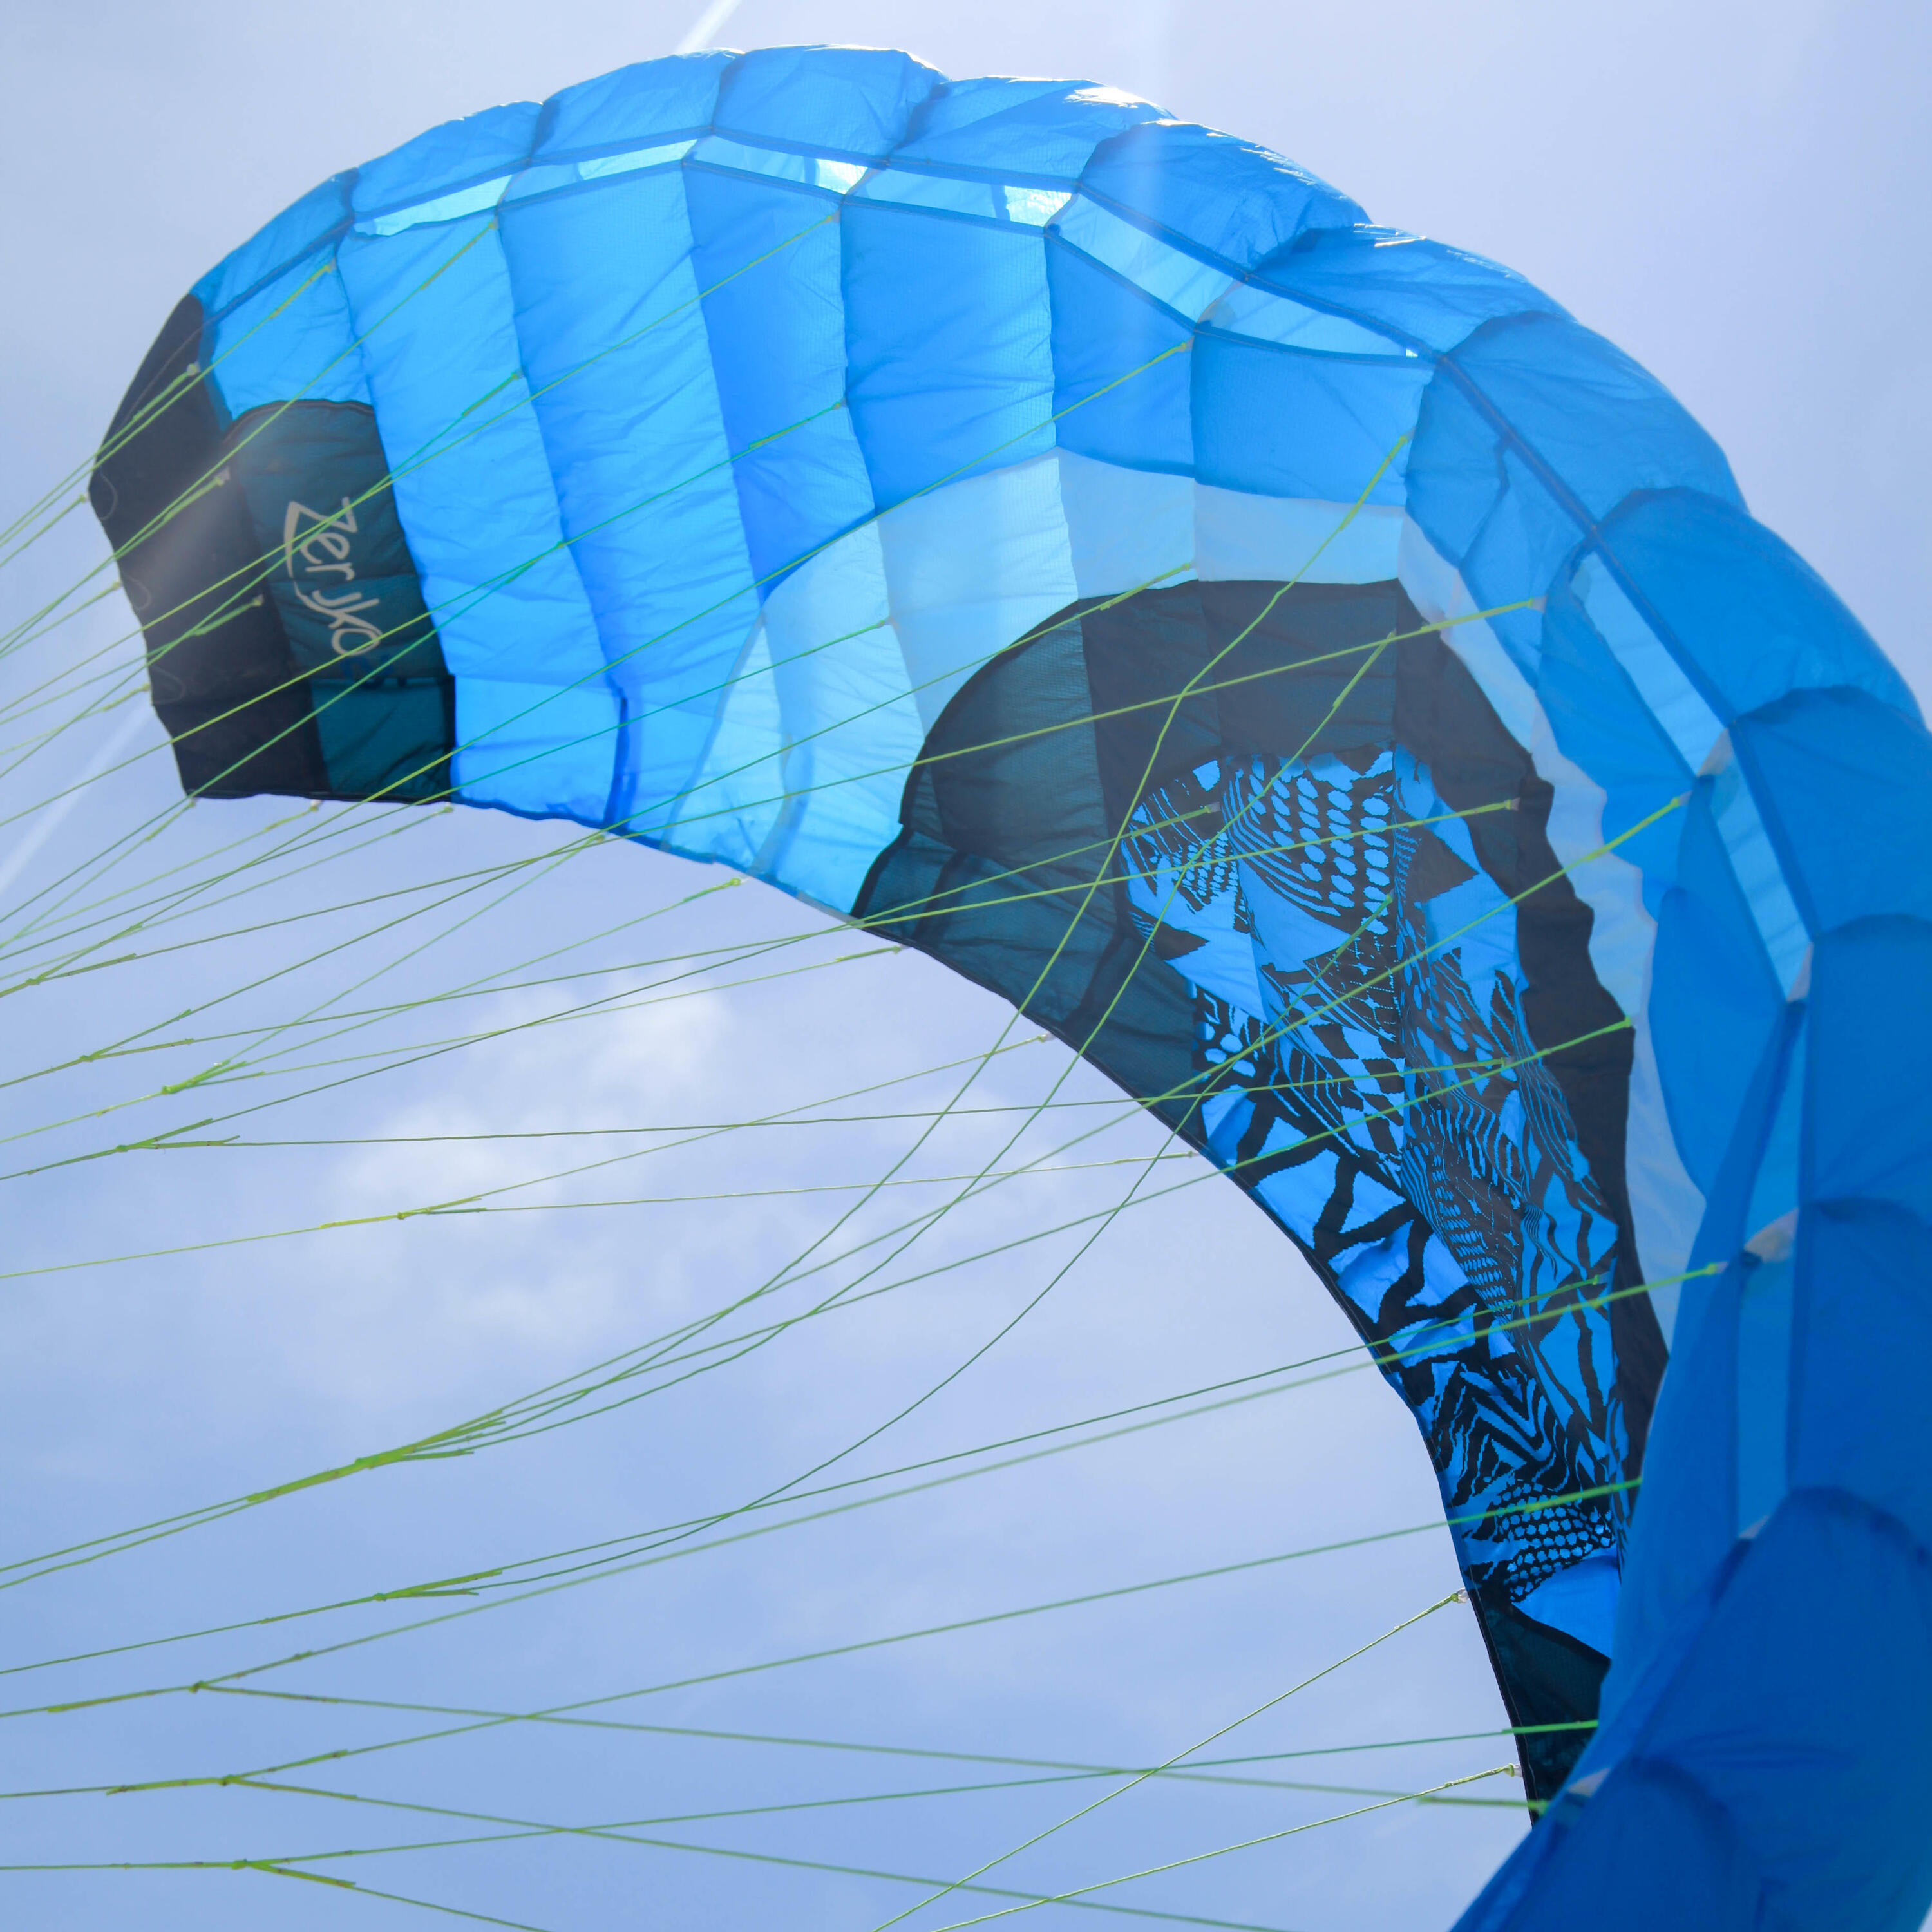 Zeruko Traction Kite 2.5 m2 + Steering Handles - Blue 3/7